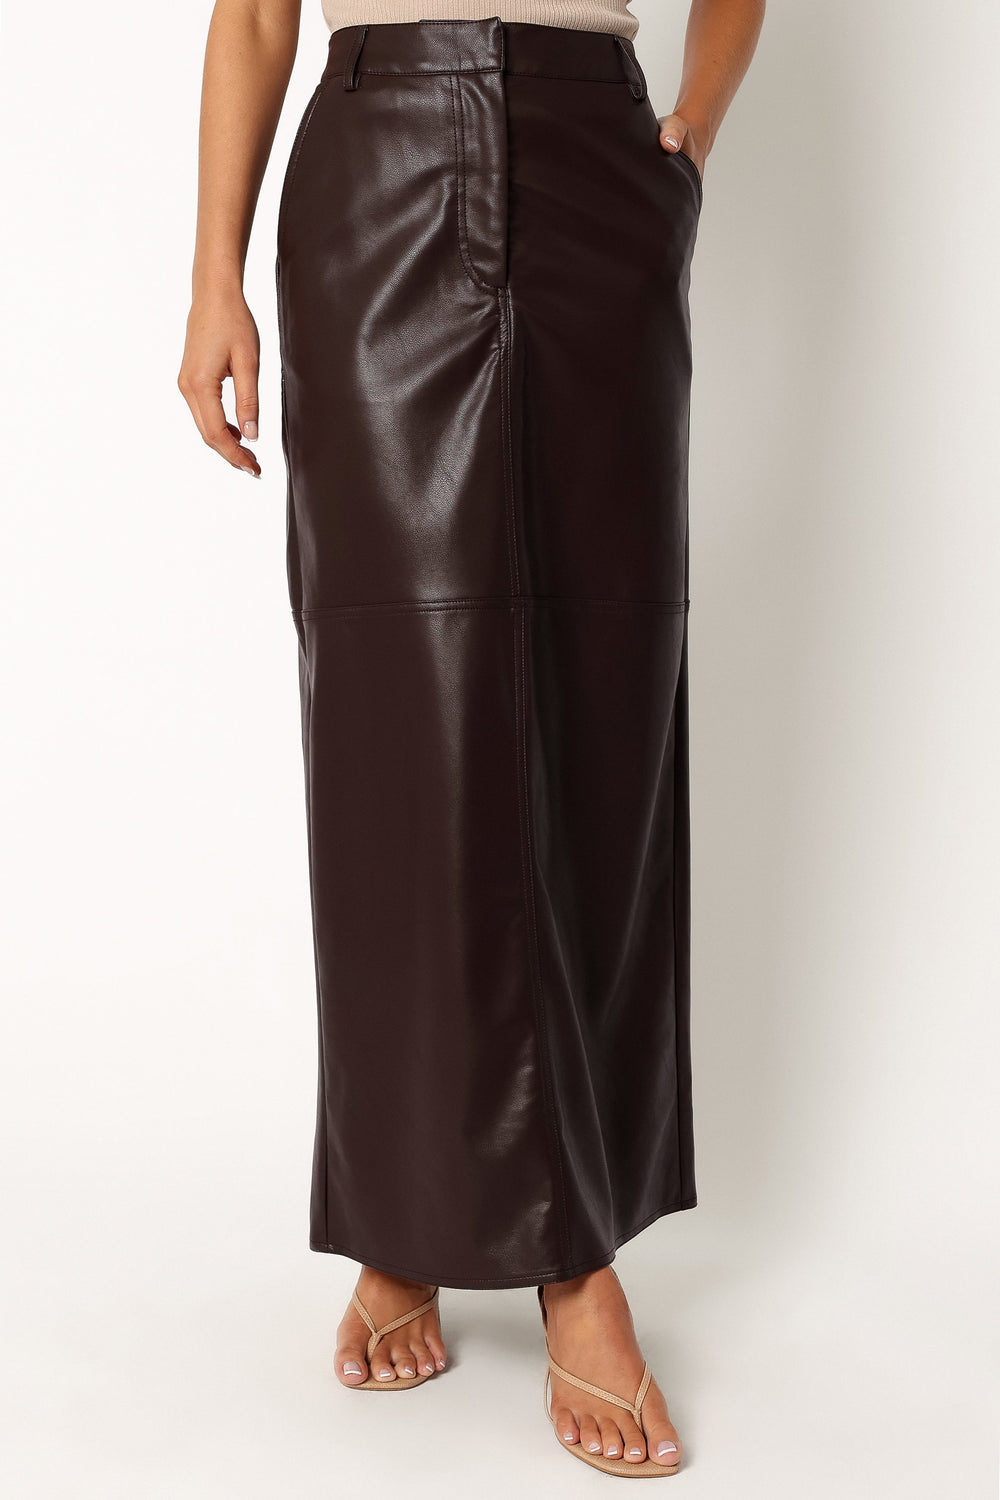 Jade Vegan Leather Column Skirt - Brown - Petal & Pup USA